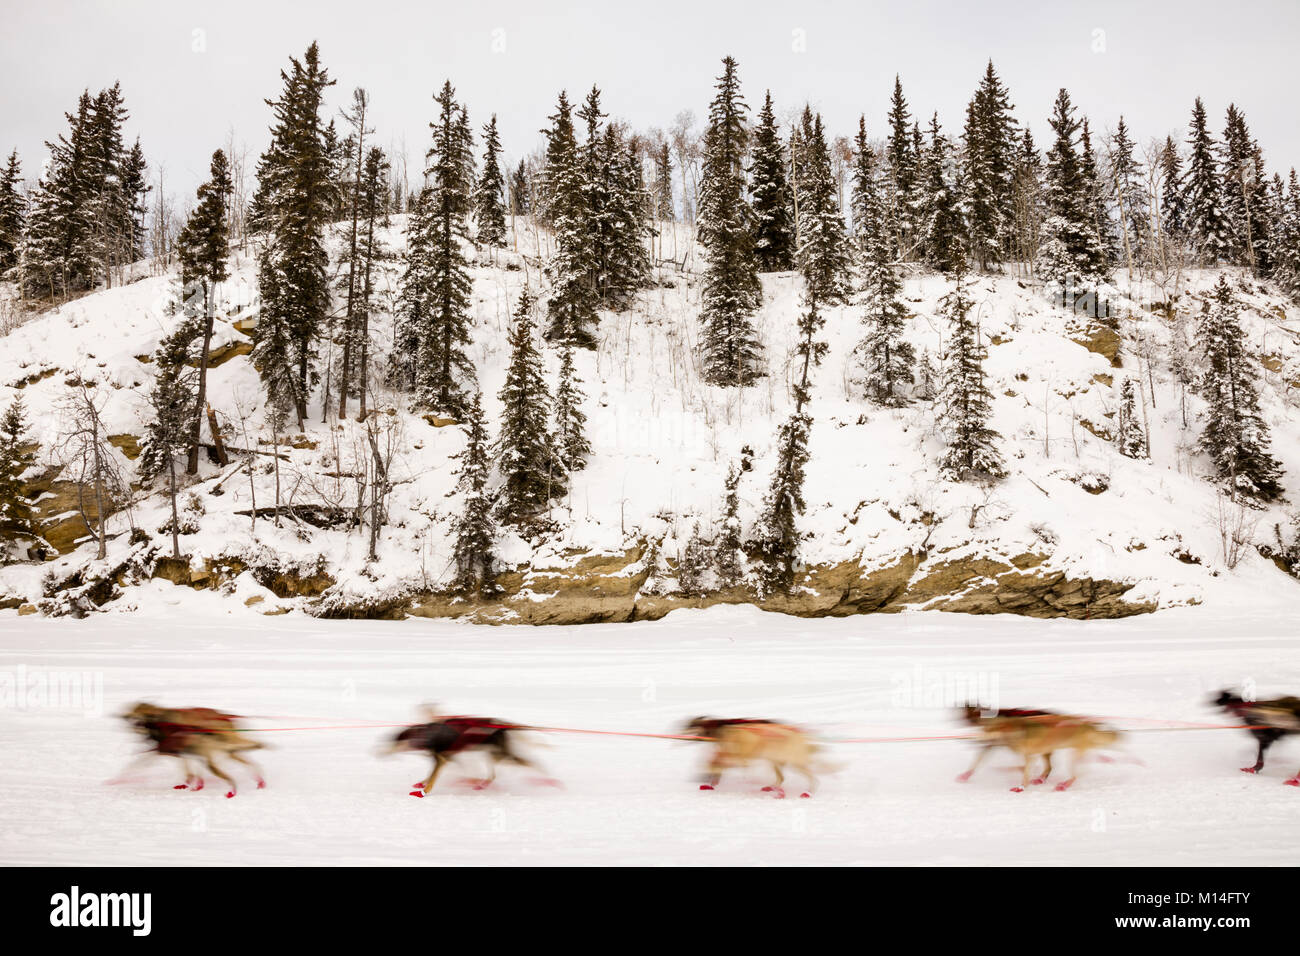 In-fotocamera motion blur di musher Anna Berington cani di competere nel xliii sentiero Iditarod Sled Dog Race sul fiume Chena dopo aver lasciato il riavvio. Foto Stock